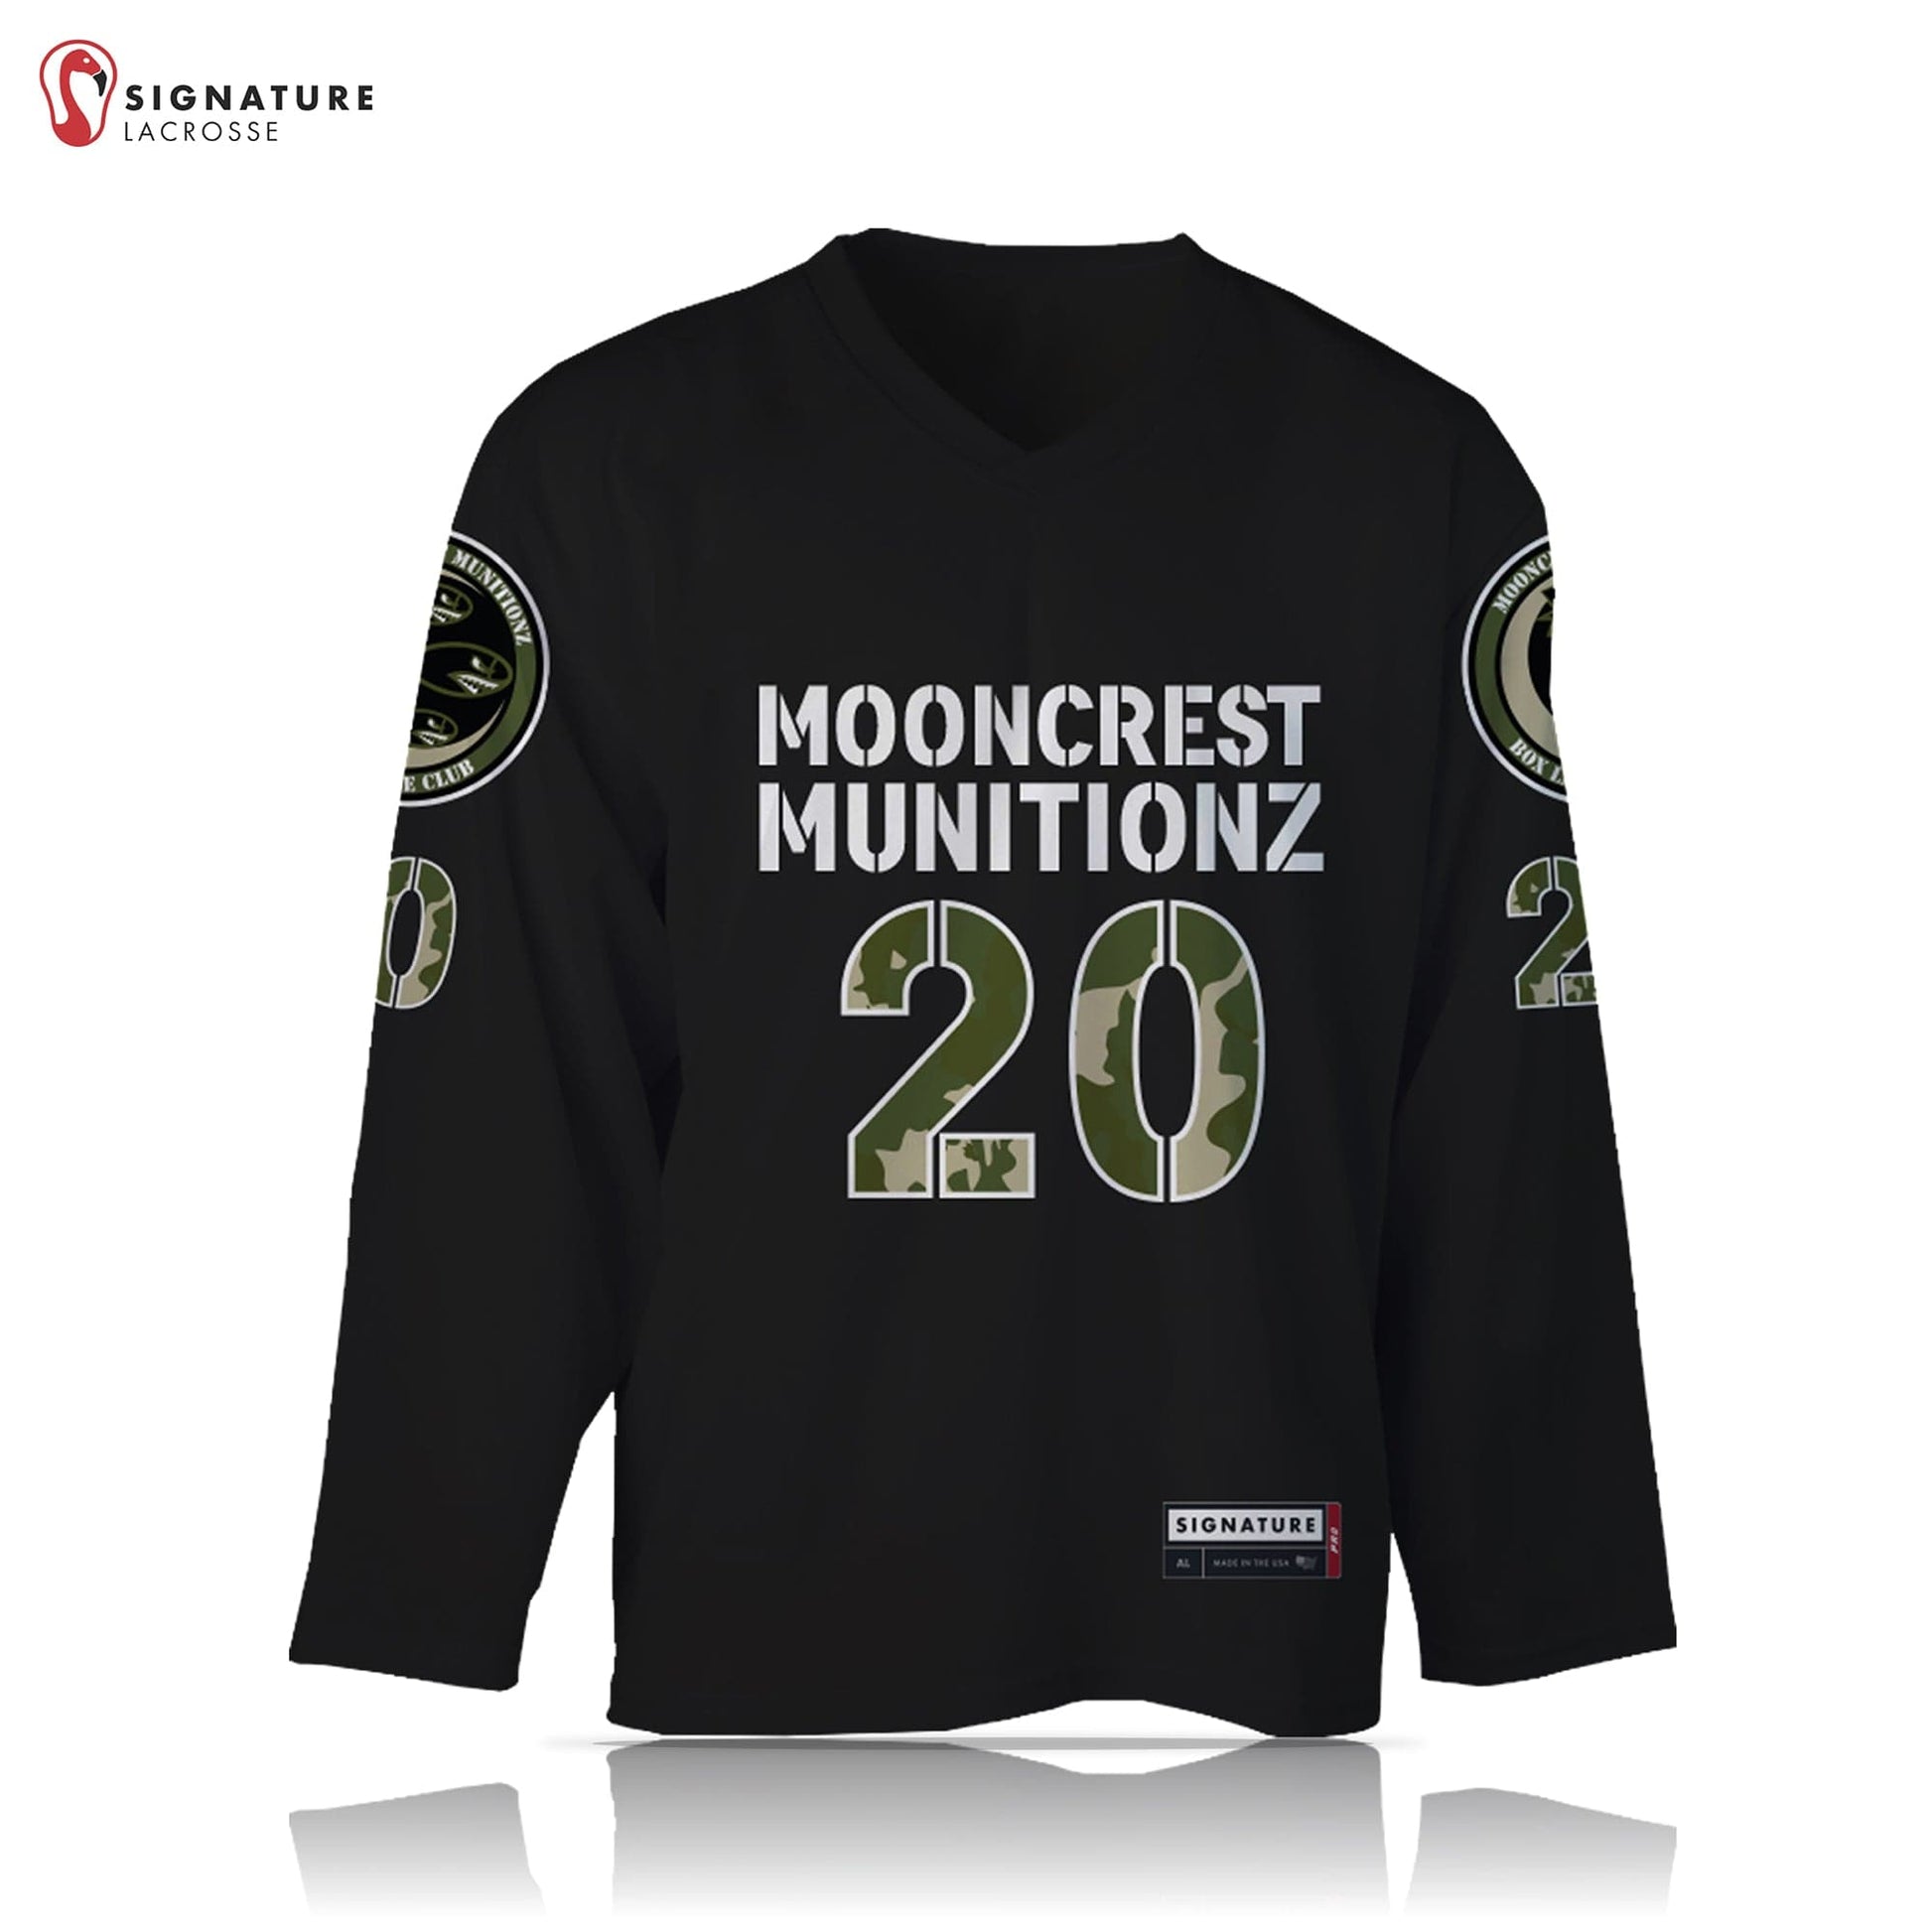 Mooncrest Munitionz Box Lacrosse Men’s Pro Box Jersey Signature Lacrosse